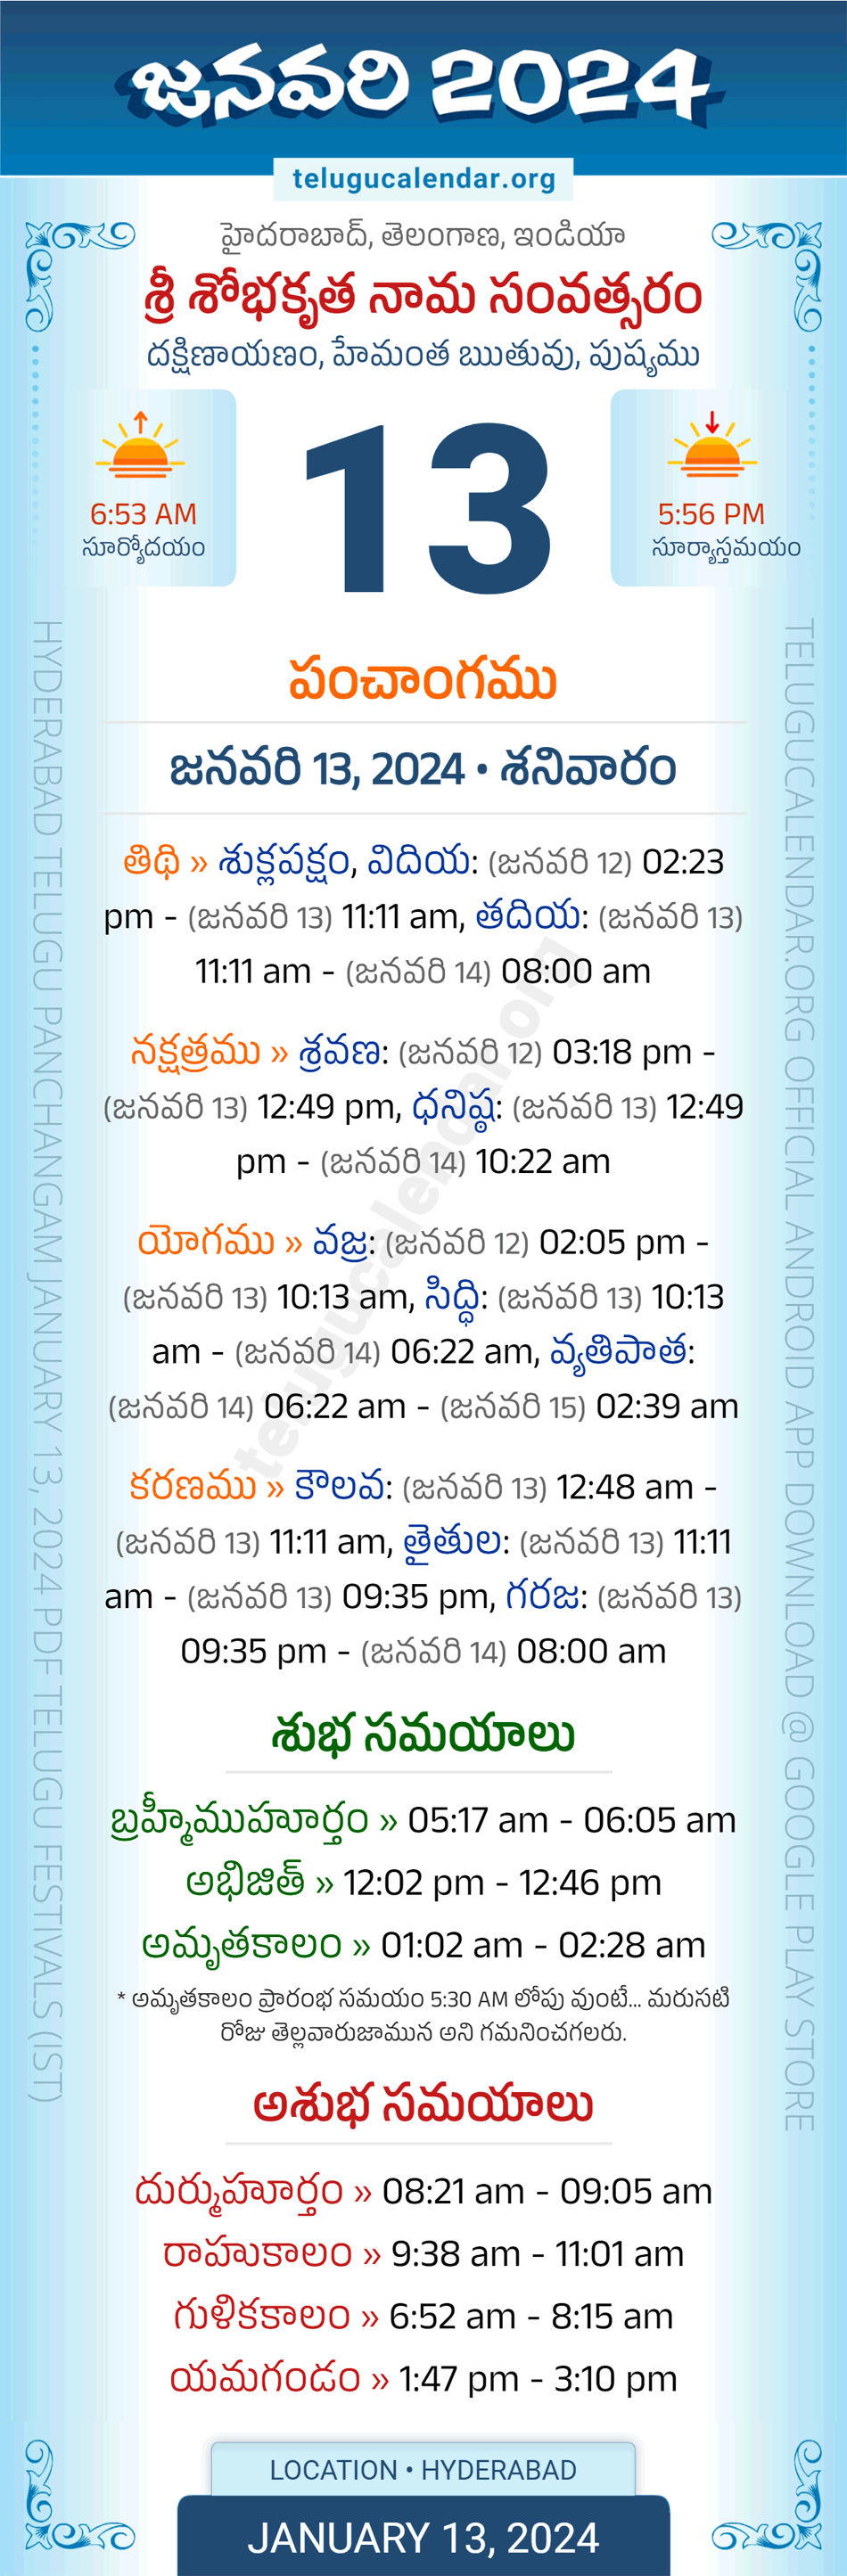 January 13, 2024 Telugu Calendar Panchangam Telangana